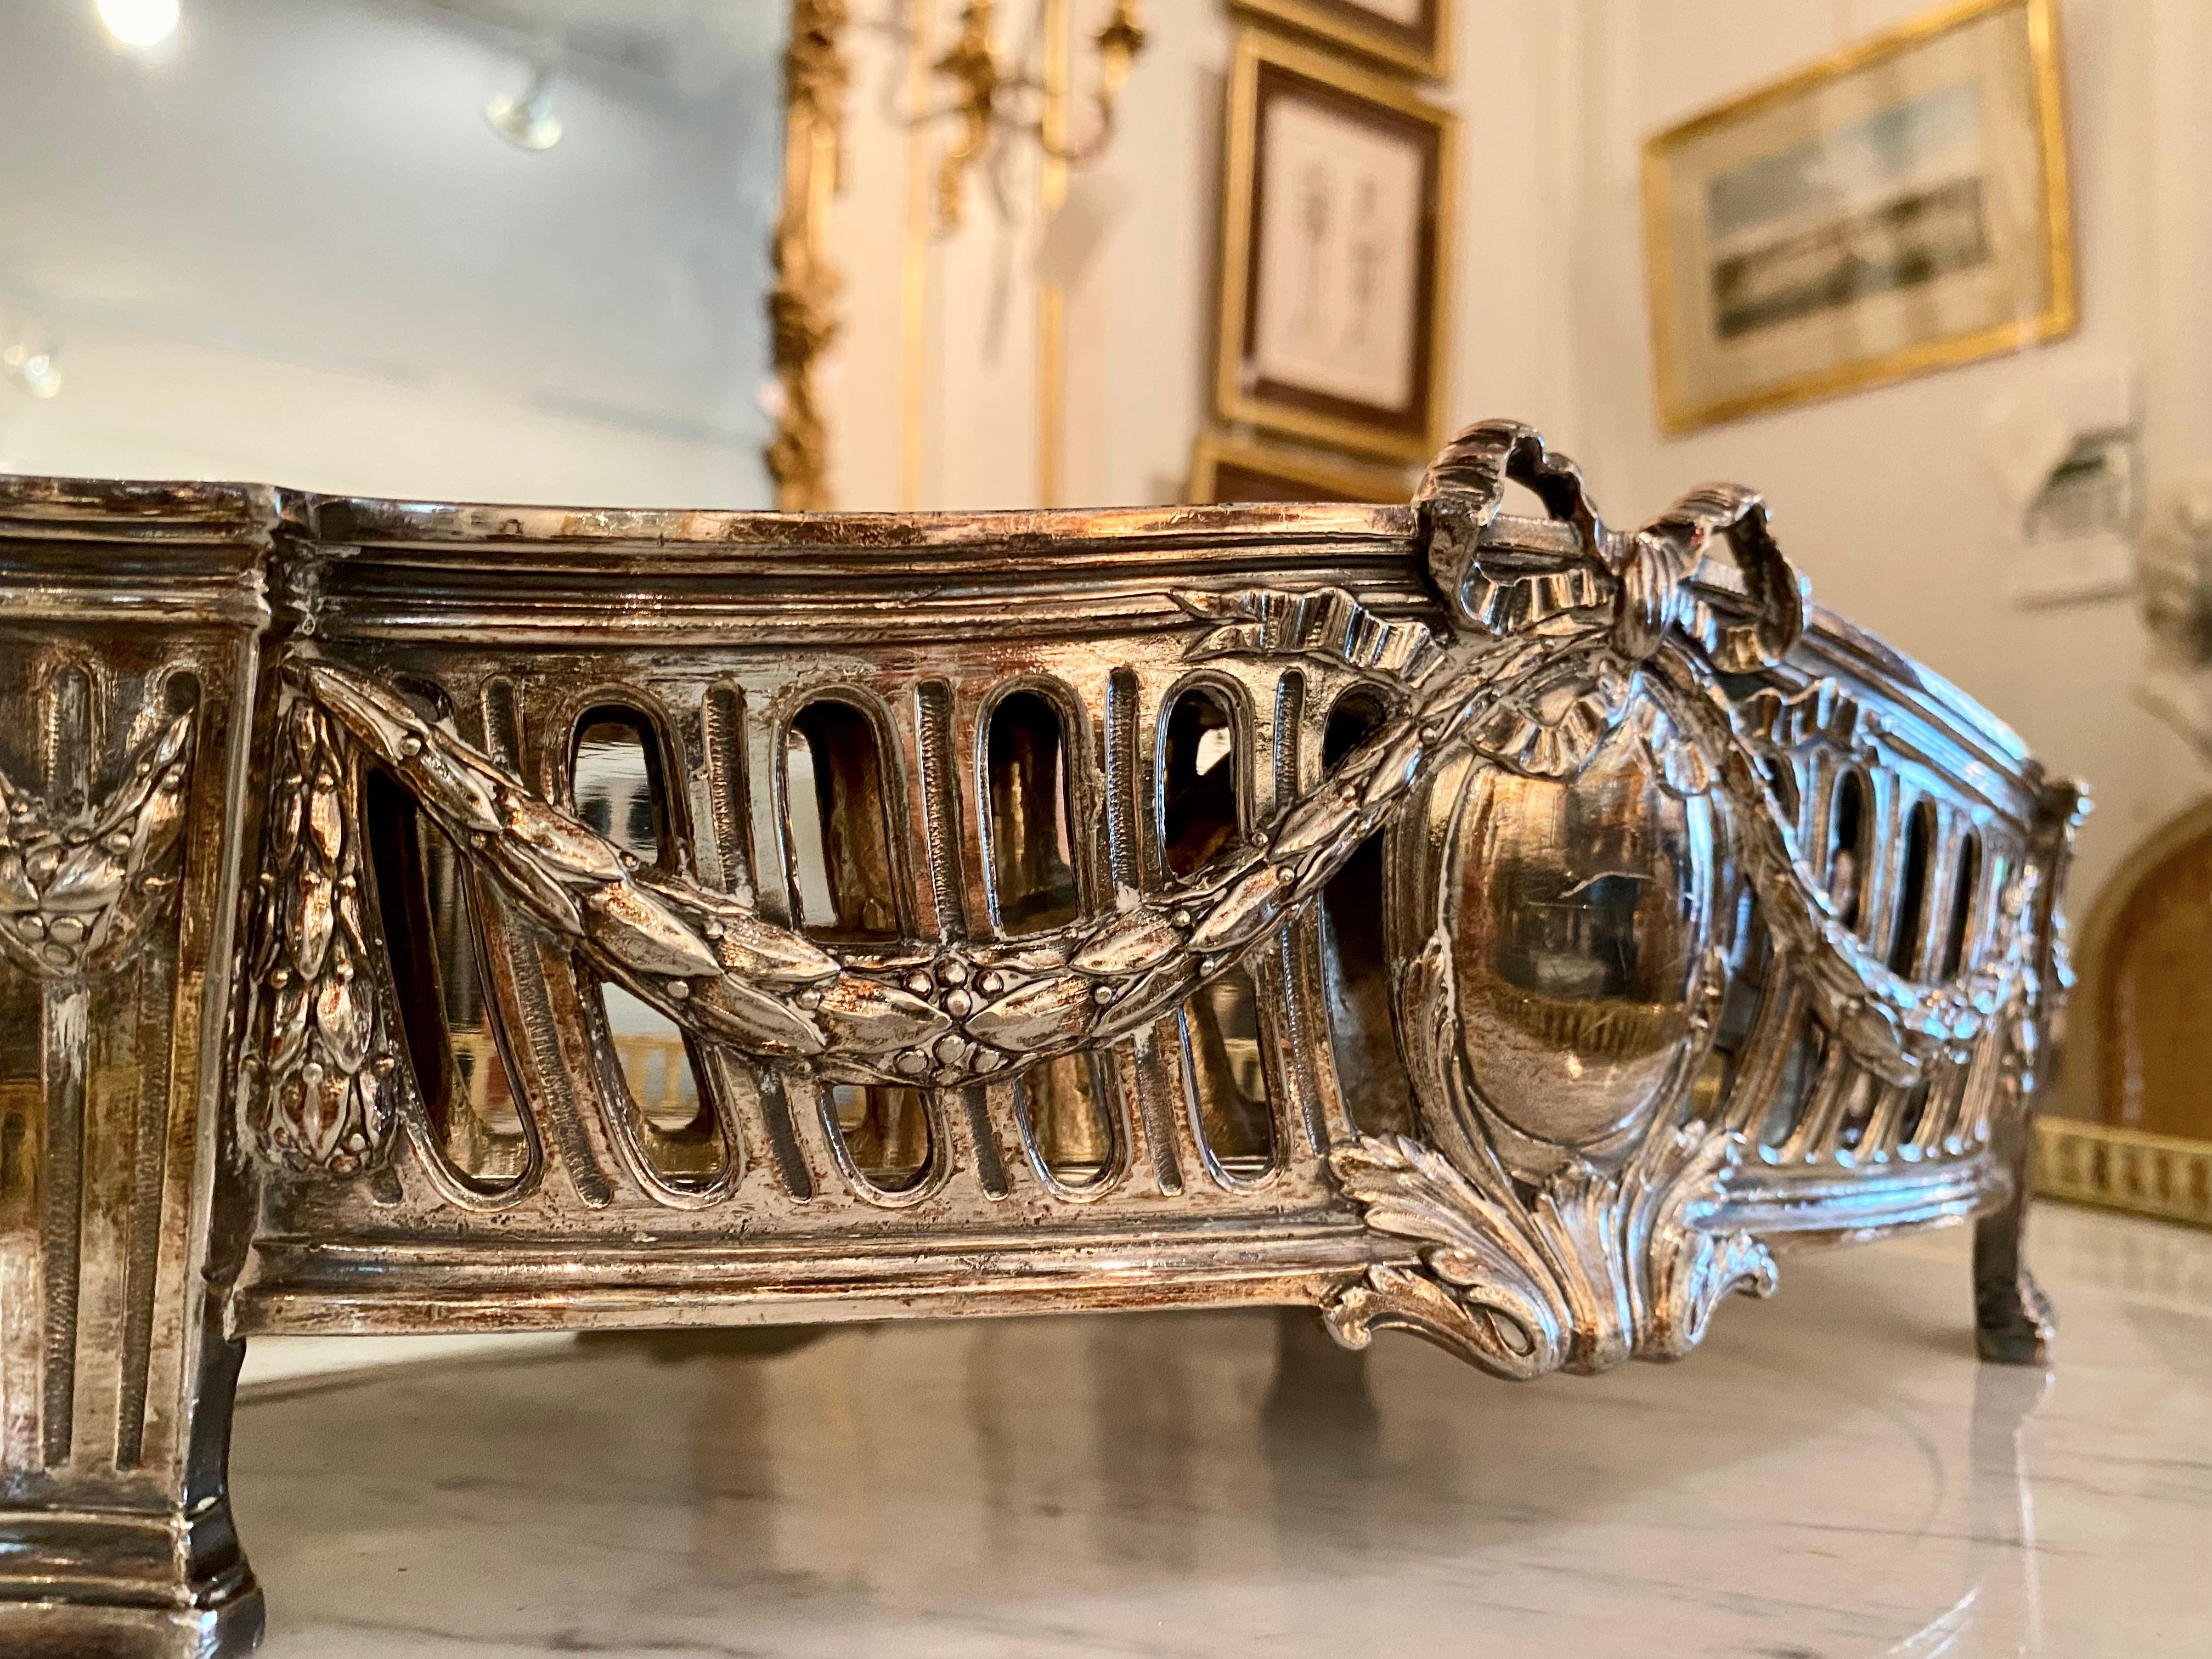 Une élégante pièce centrale en bronze argenté de style Louis XVI du 19ème siècle français avec un insert amovible en métal. Le centre de table repose sur des pieds à colonnes et est orné, dans le style néoclassique Louis XVI, de guirlandes et de